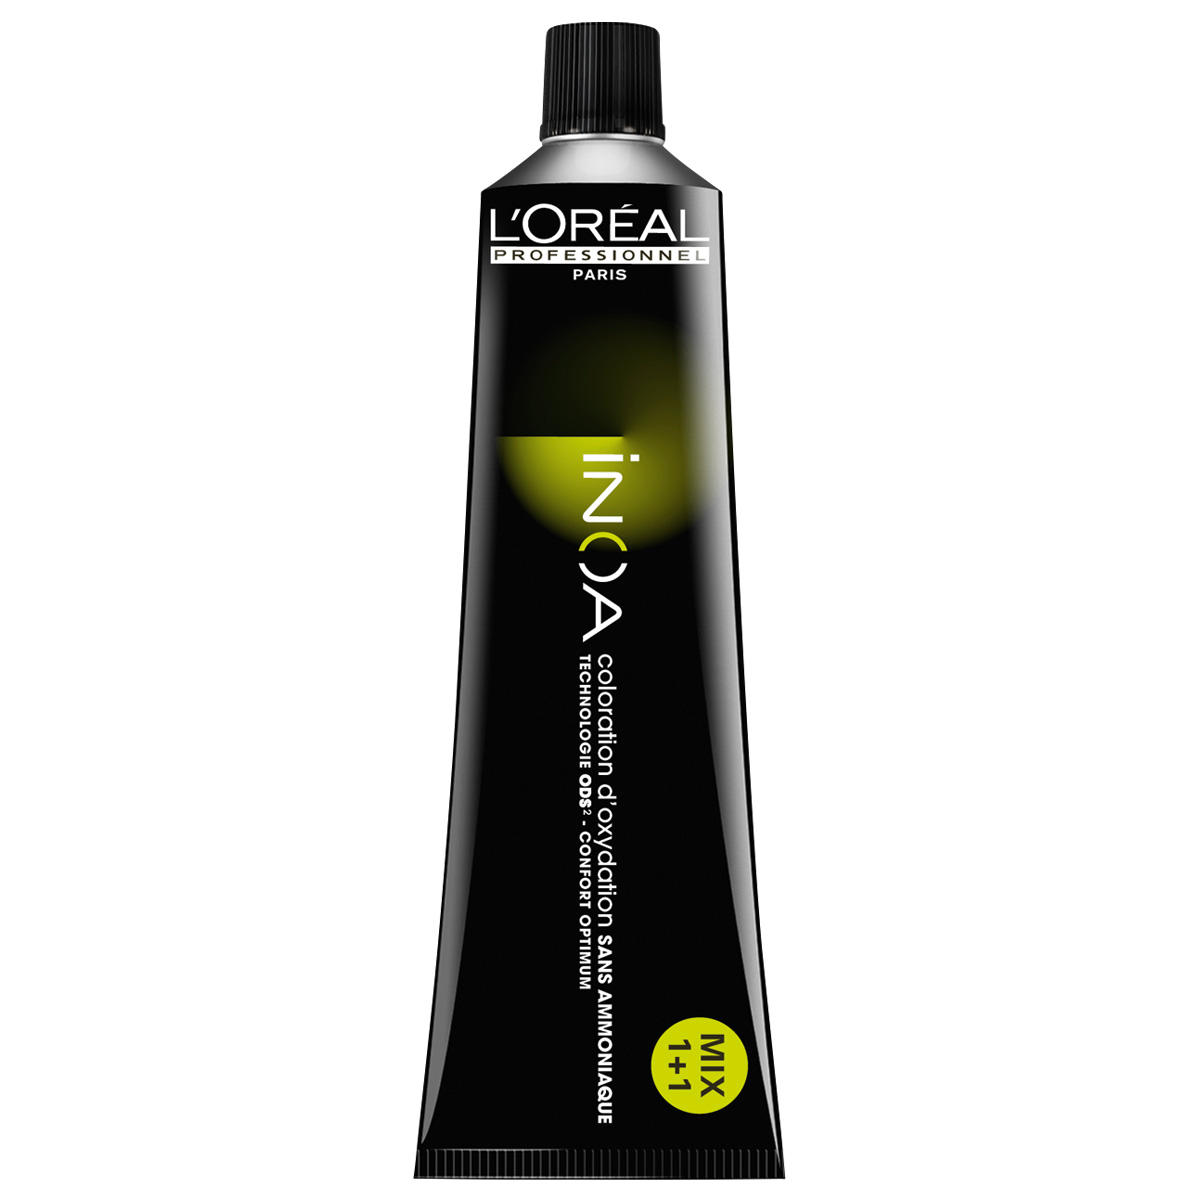 L'Oréal Professionnel Paris Coloration 5.8 Marrone chiaro moka, tubo 60 ml - 1